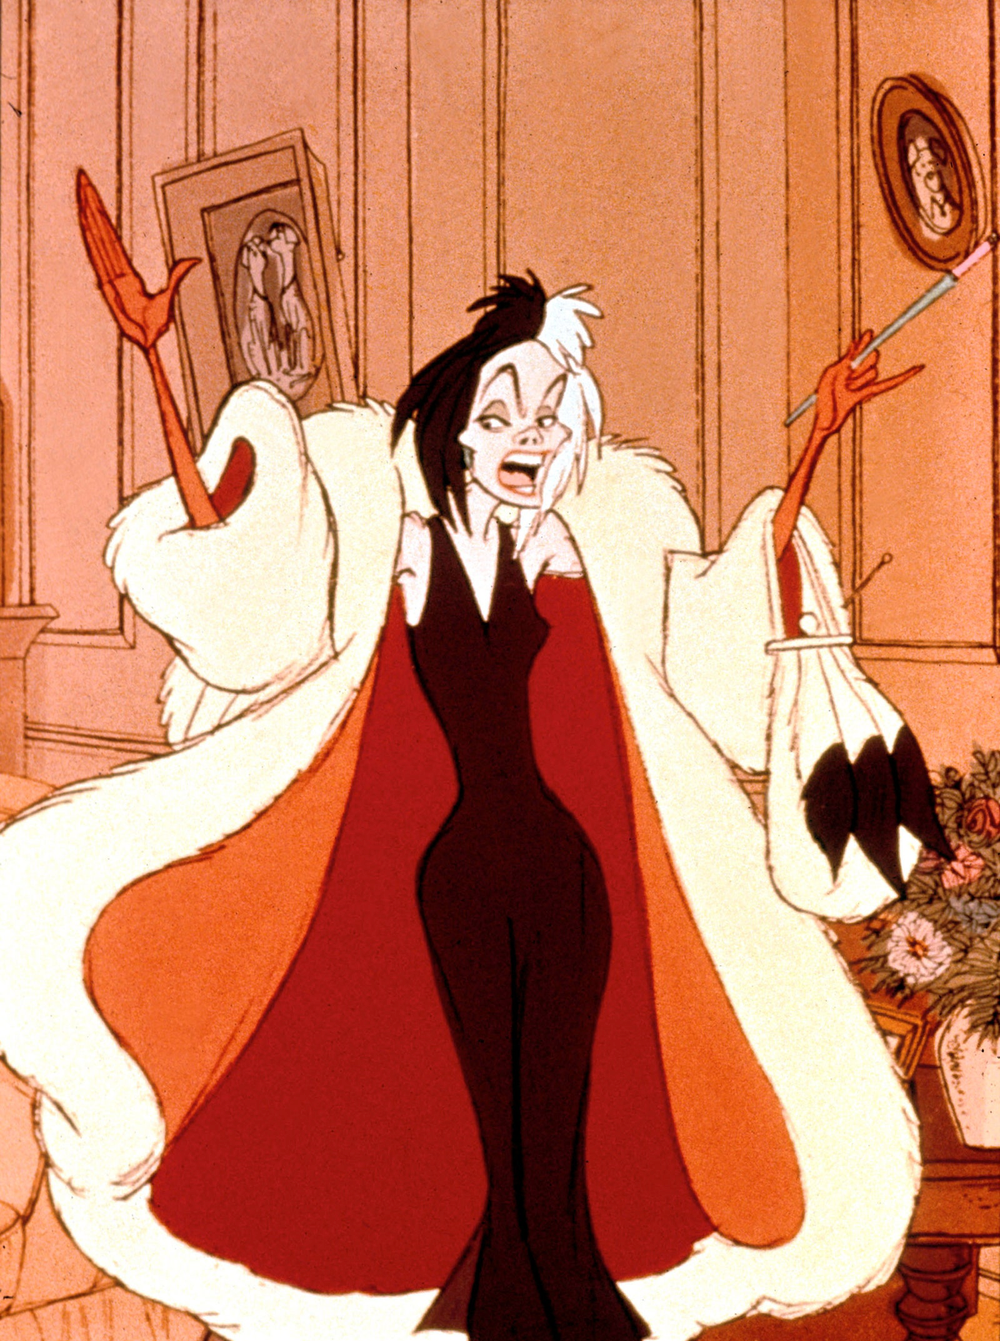 Le personnage animé Cruella de Vil se tient dans une pièce, souriant méchamment, avec ses cheveux noirs et blancs ébouriffés. Elle porte un somptueux manteau de fourrure et une robe rouge, tenant un sac à main et un